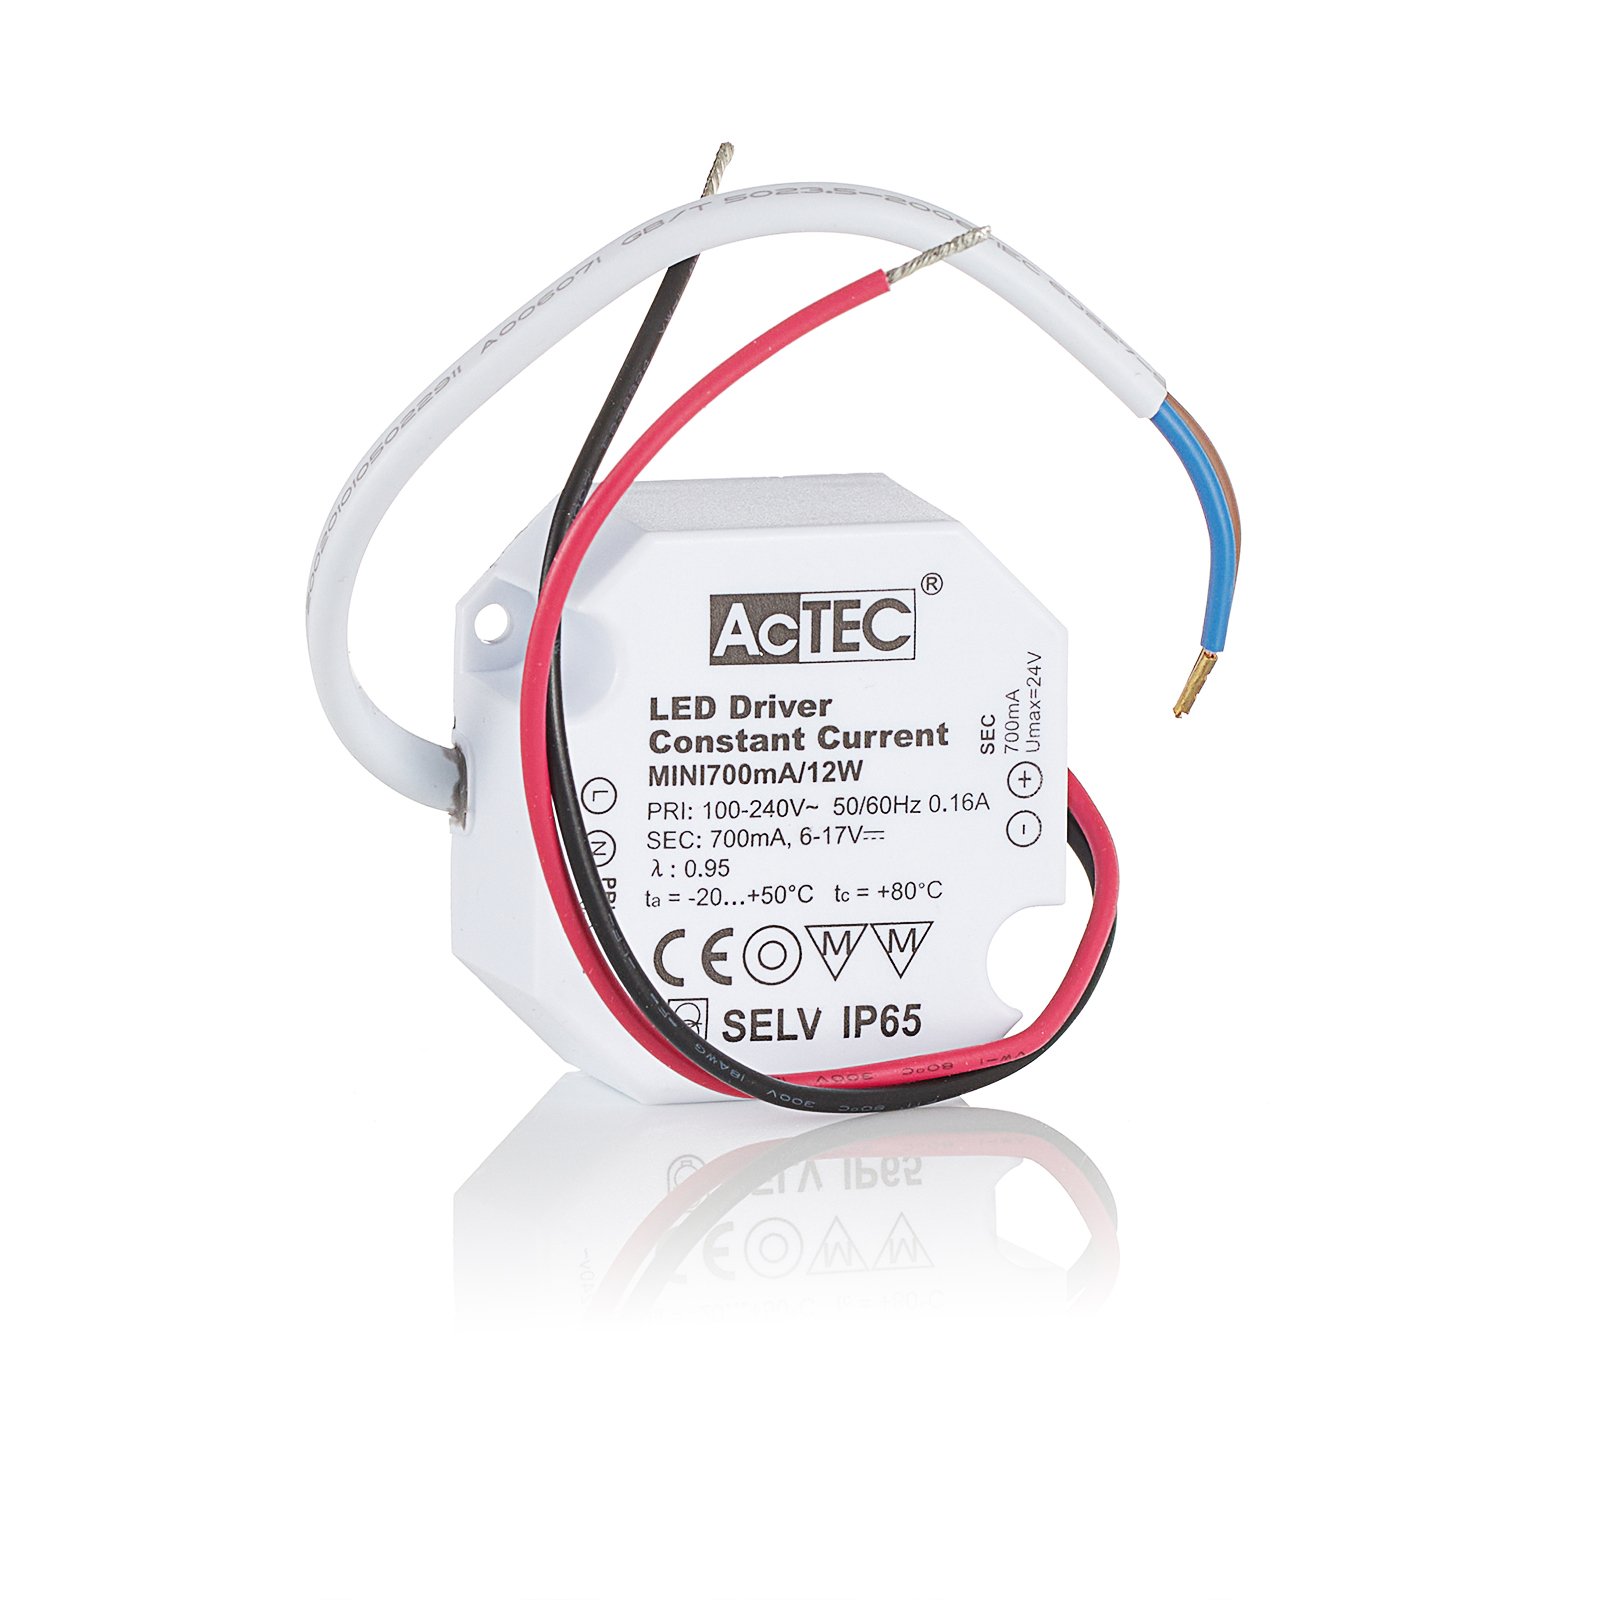 AcTEC Mini LED budič CC 700 mA, 12 W, IP65